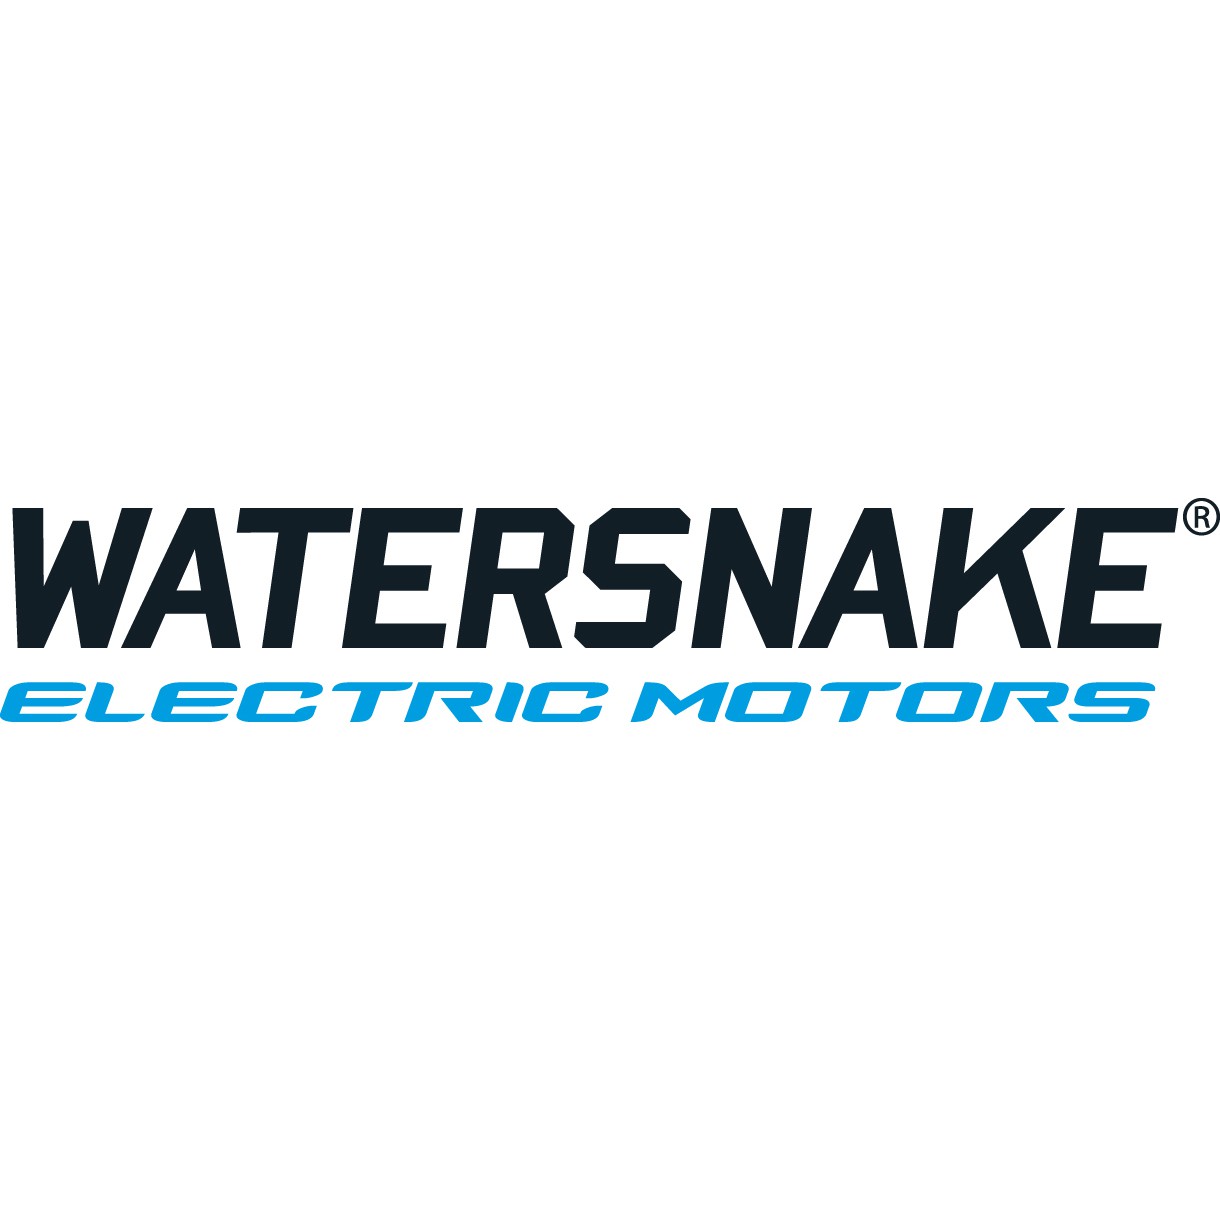 Watersnake Electric Trolling Motors